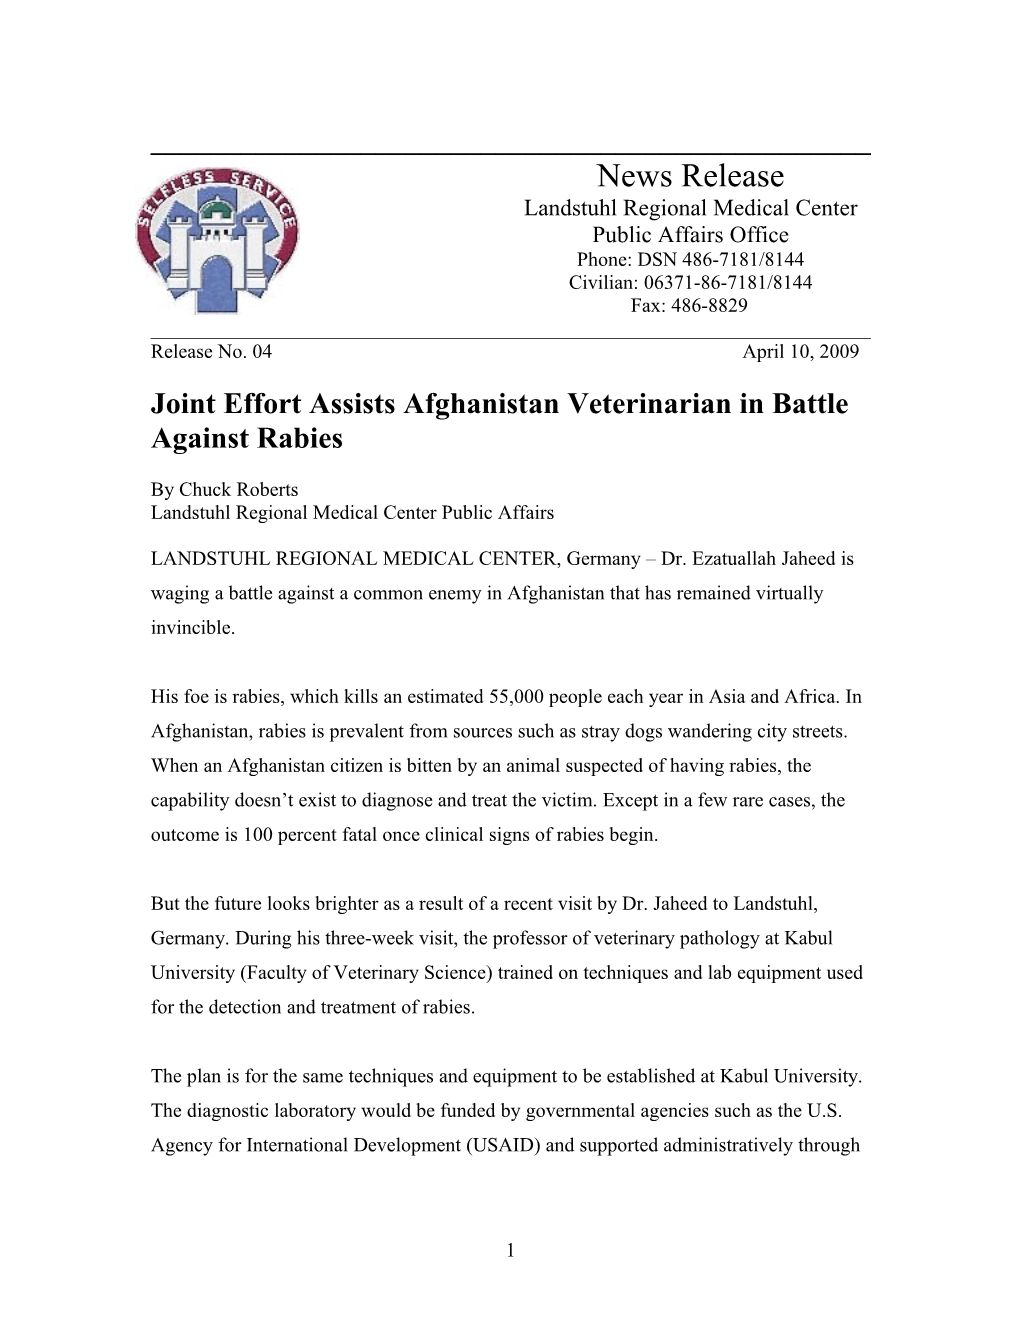 Joint Effort Assists Afghanistan Veterinarian in Battle Against Rabies